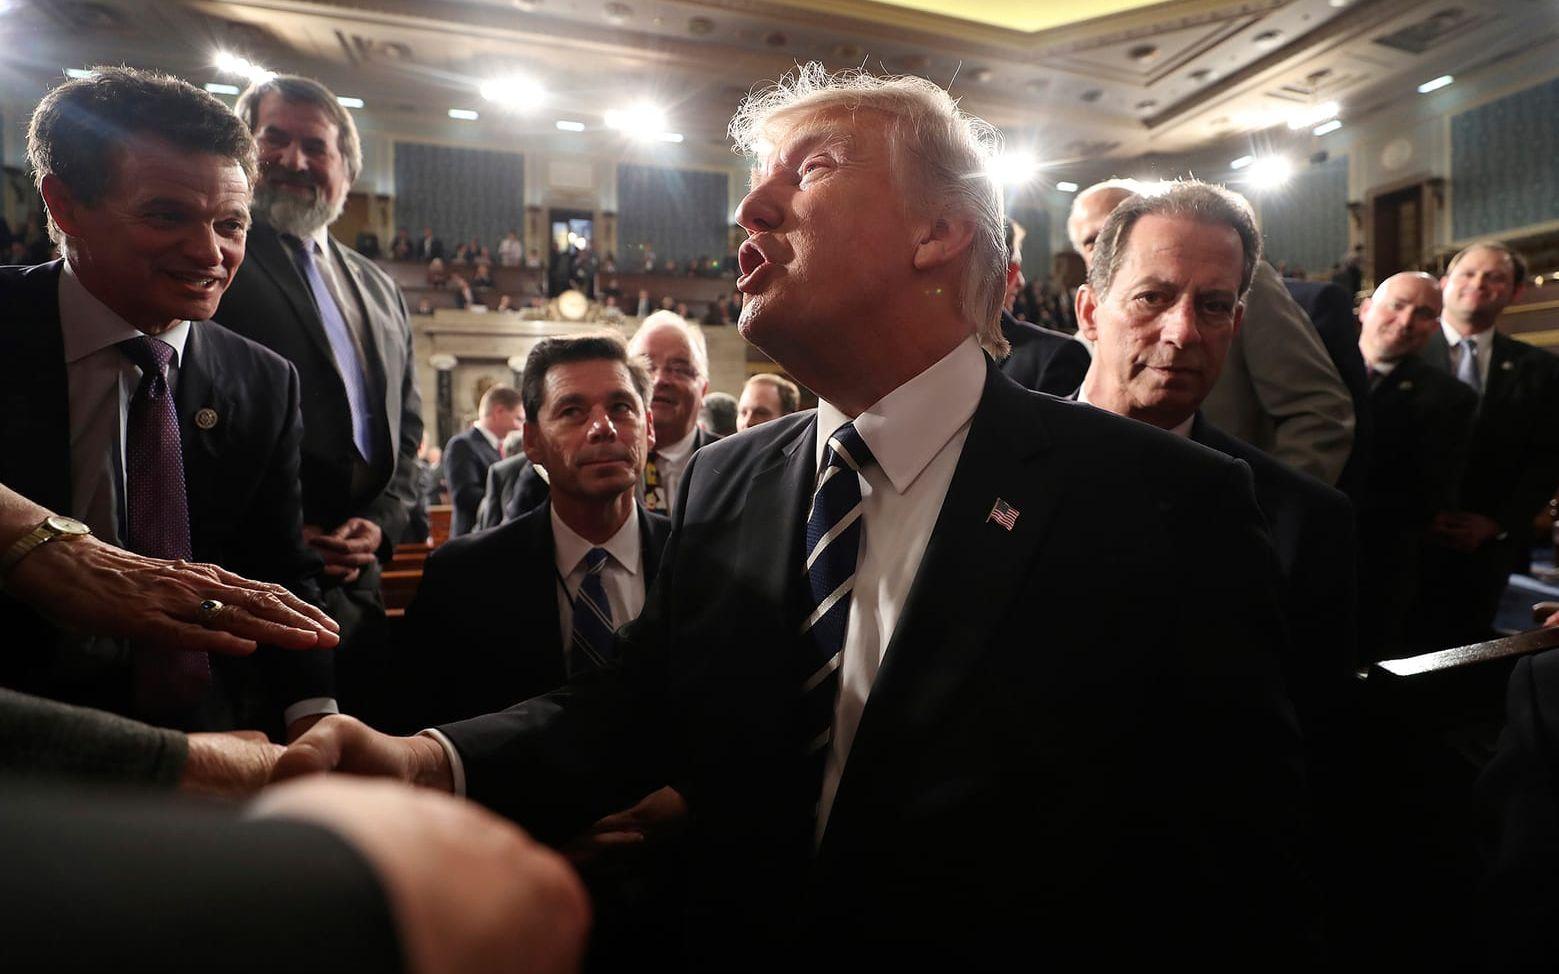 President Donald Trumps tal inför kongressen och nationen uppskattades av amerikanerna, enligt tidiga mätningar. FOTO: AP